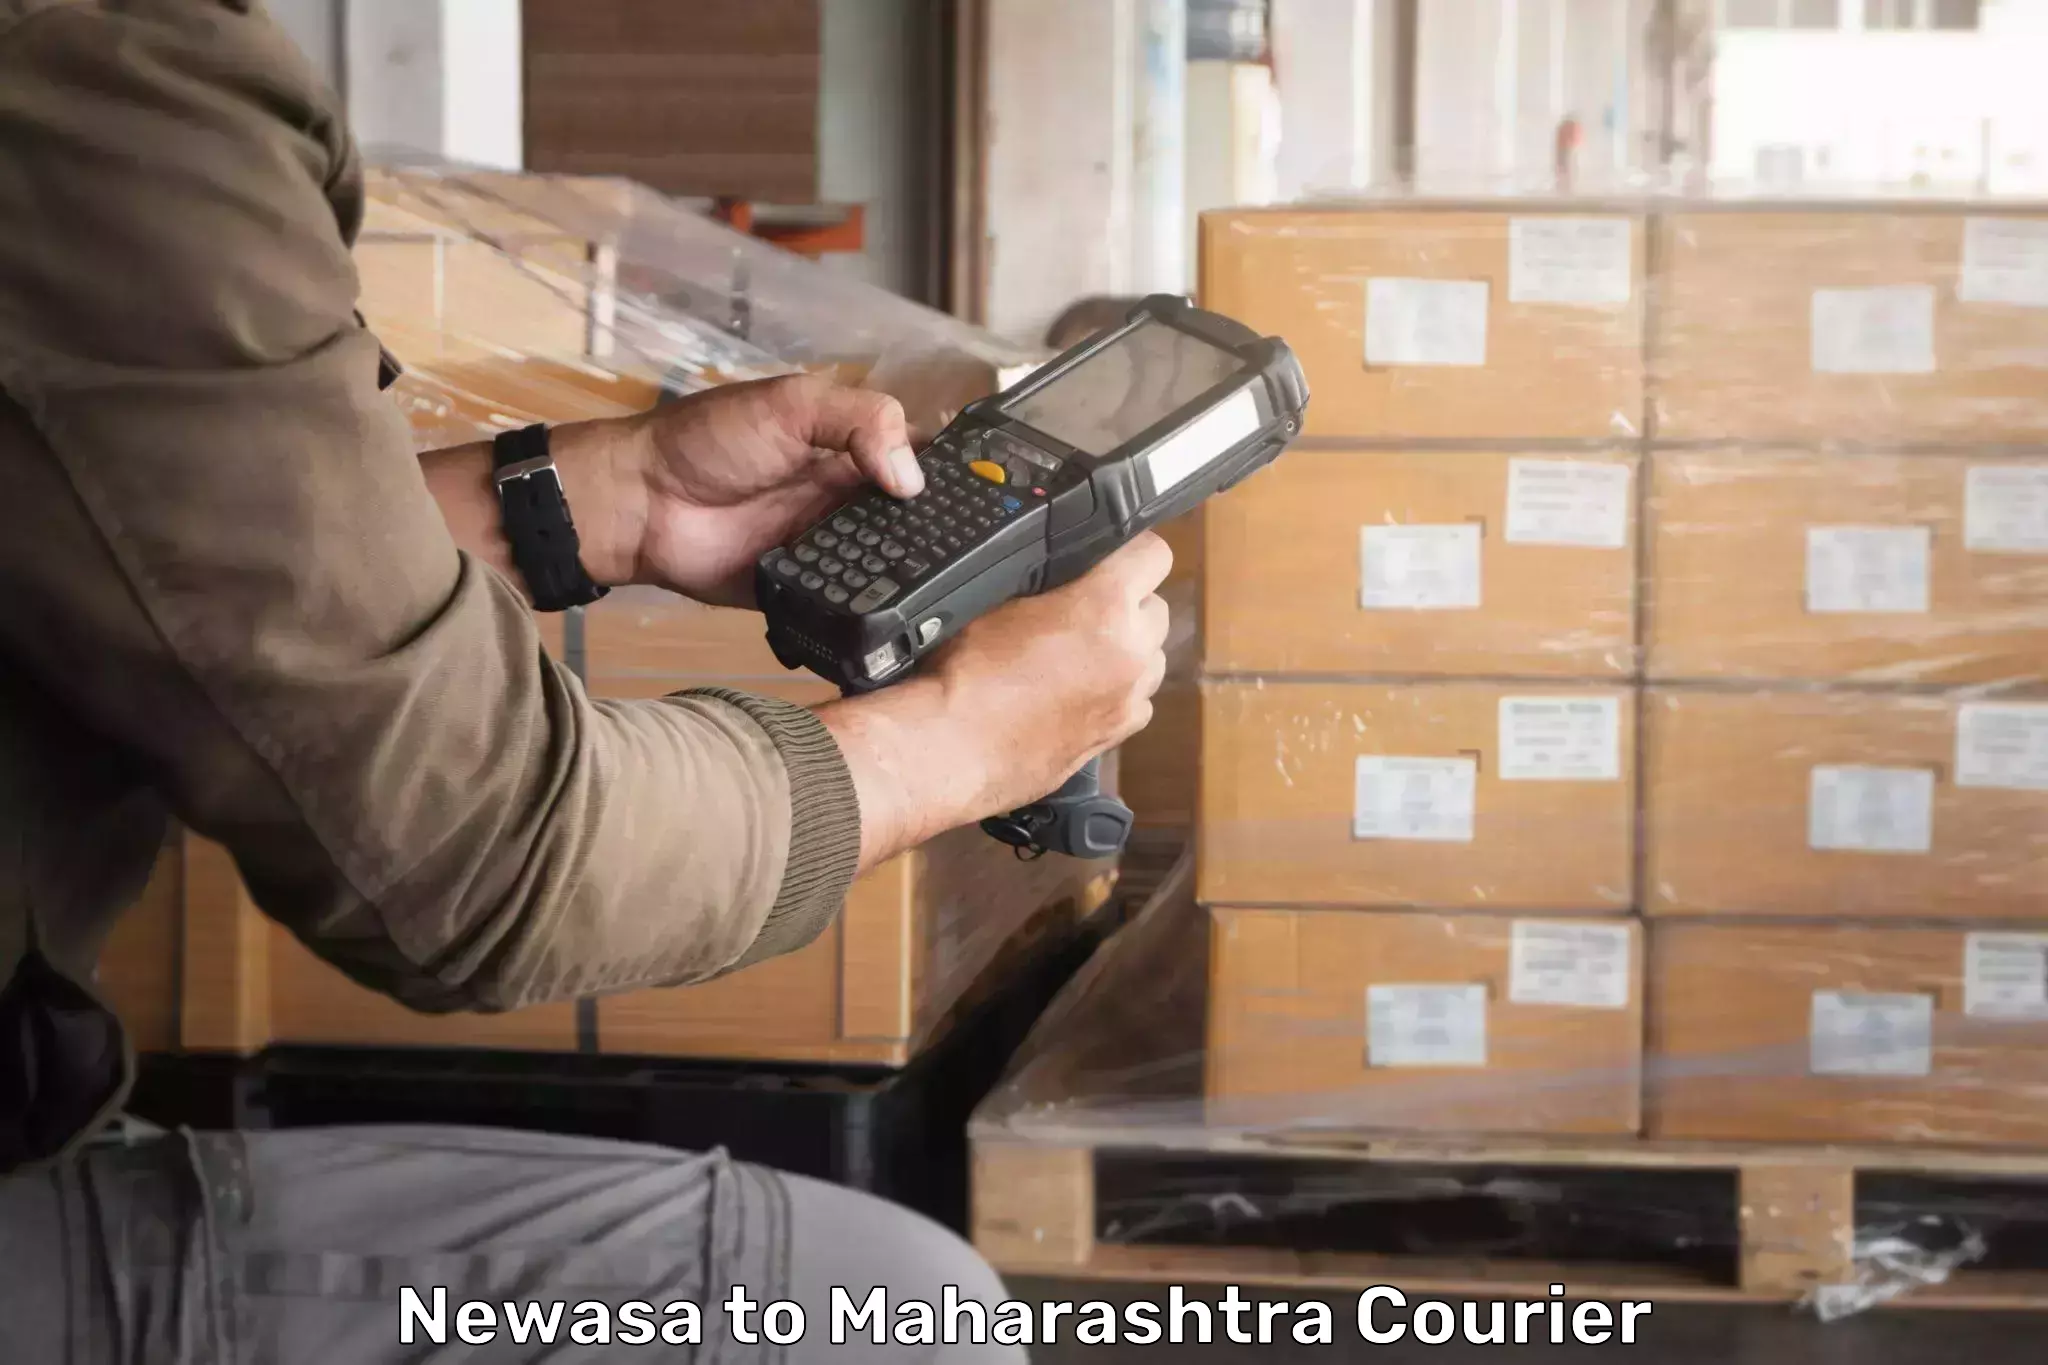 Professional courier handling Newasa to IIT Mumbai